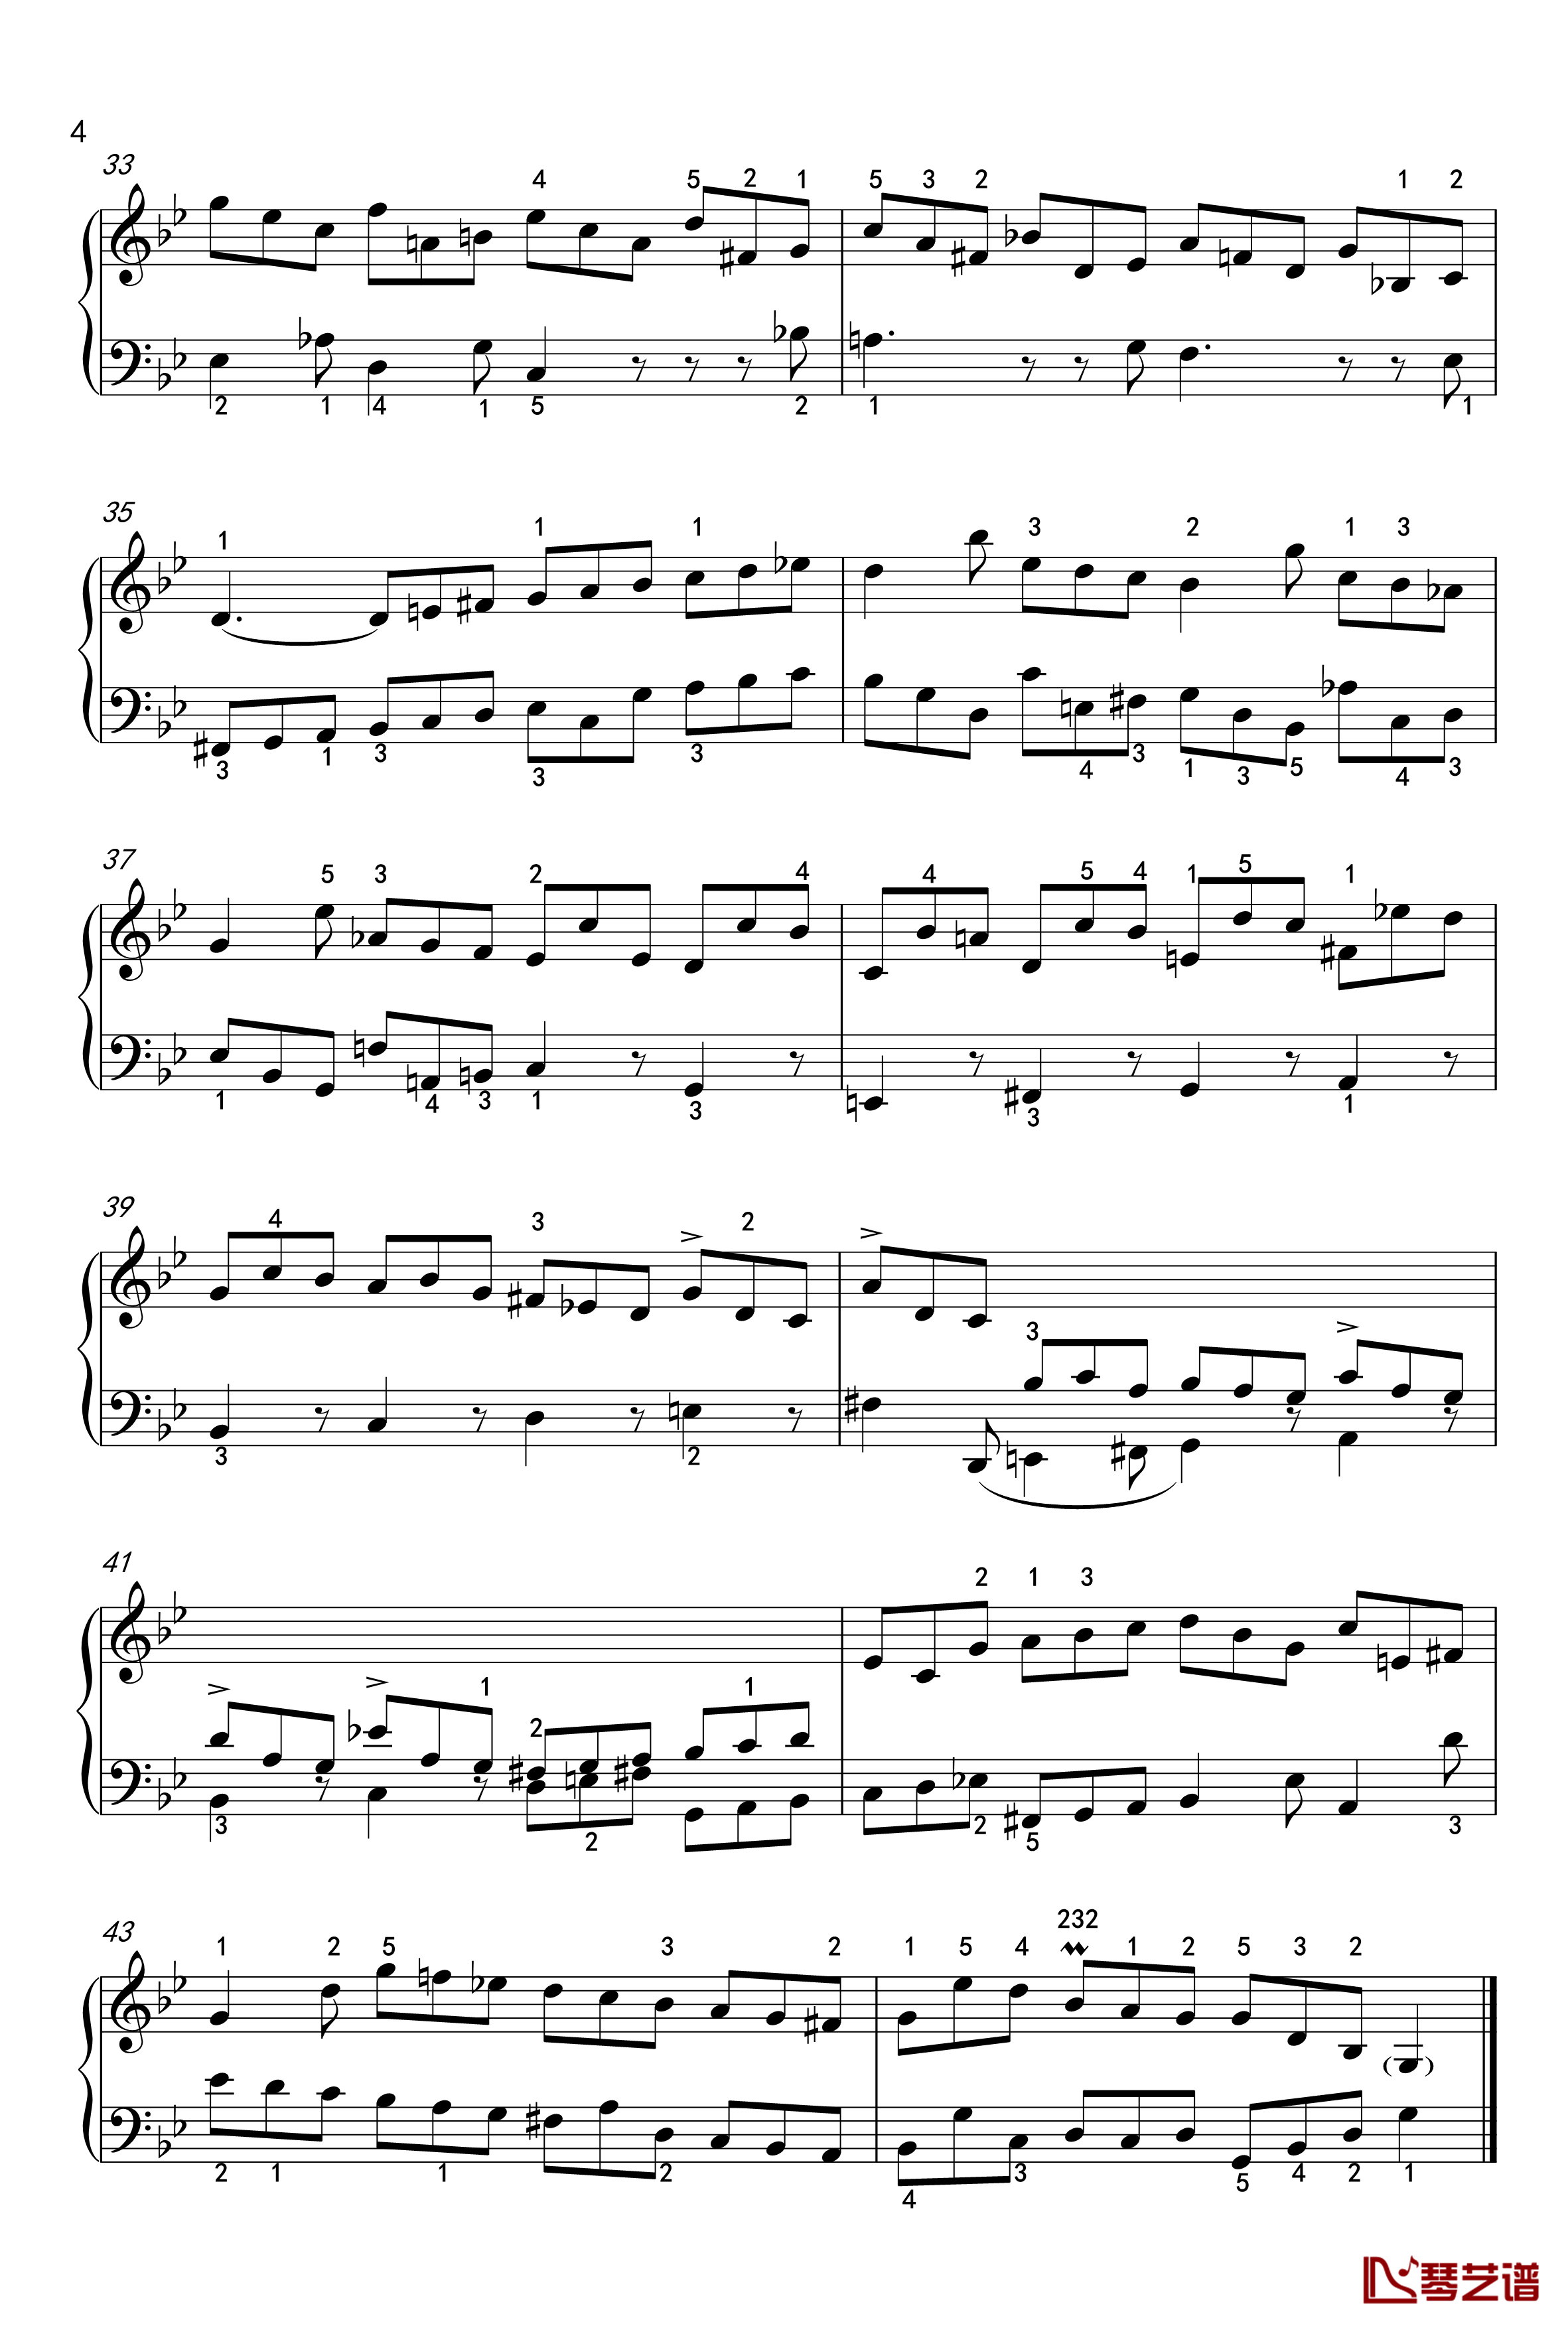 吉格舞曲钢琴谱-英国组曲-BWV-808-7-巴赫-P.E.Bach4